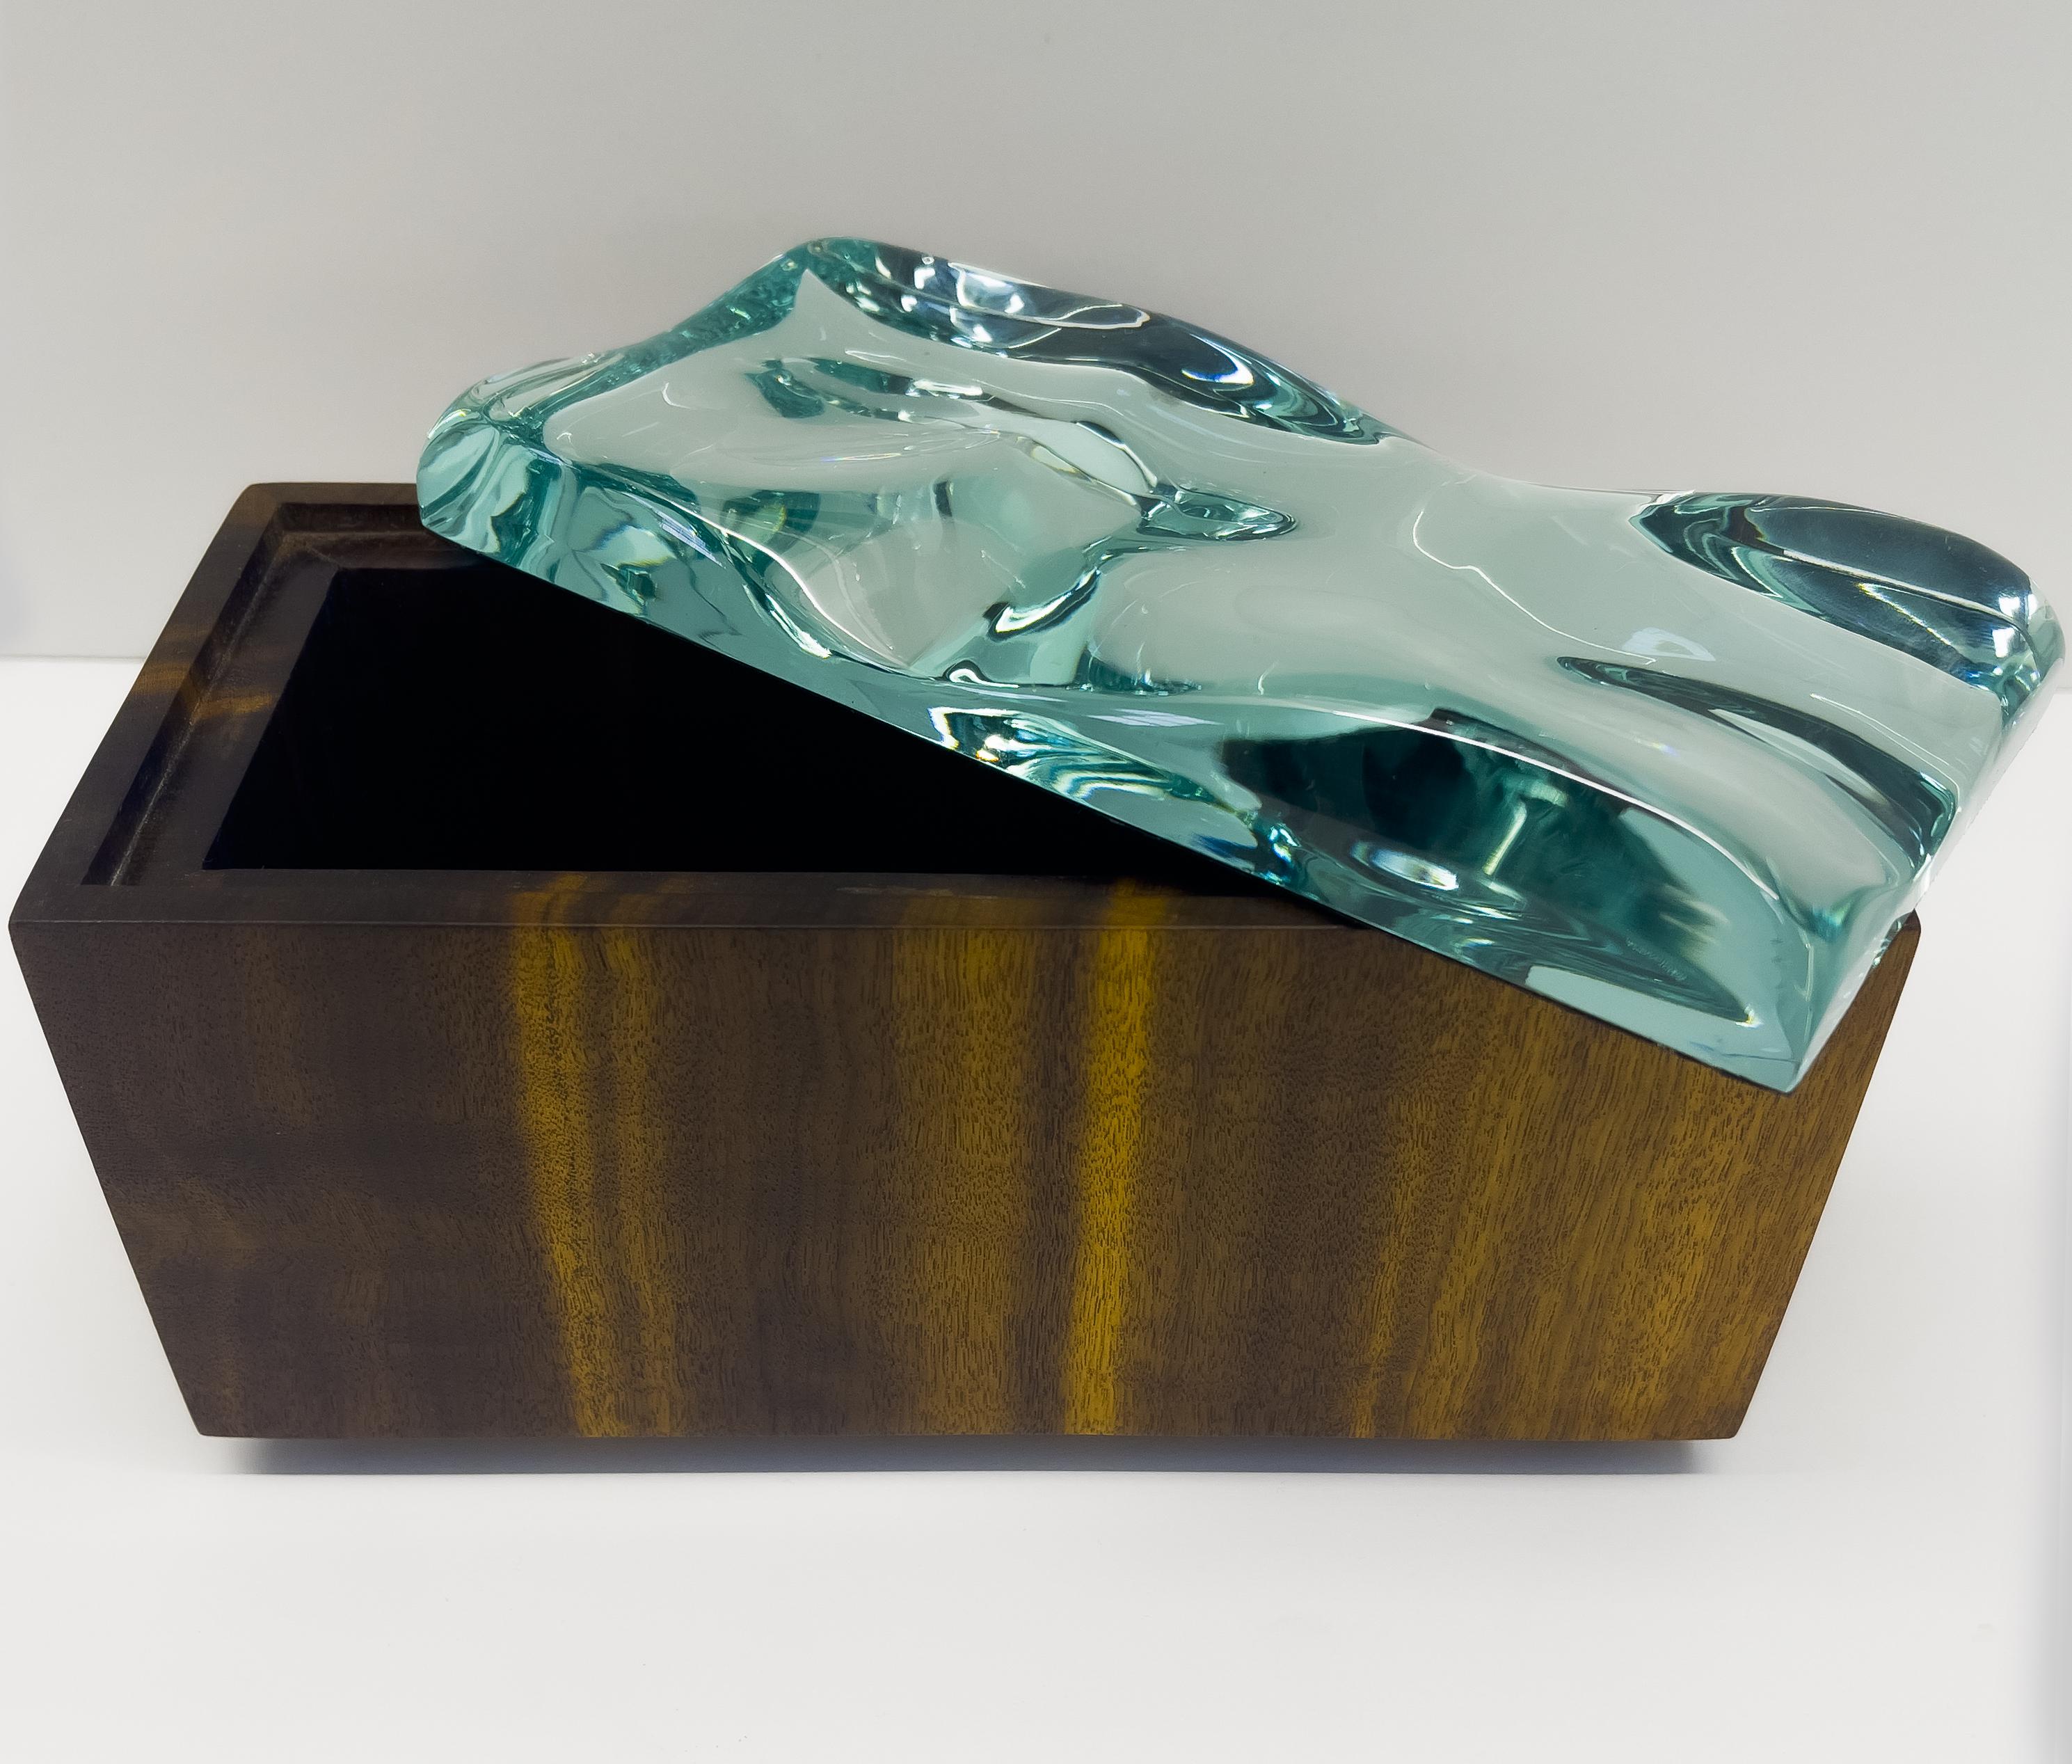 2023 Collection of Decorative boxes von Ghiró Studio.

Die Art der handwerklichen Verarbeitung und die für die Herstellung verwendeten MATERIALIEN machen diese Schachtel zu einem einzigartigen Objekt, denn es ist unmöglich, zwei vollkommen